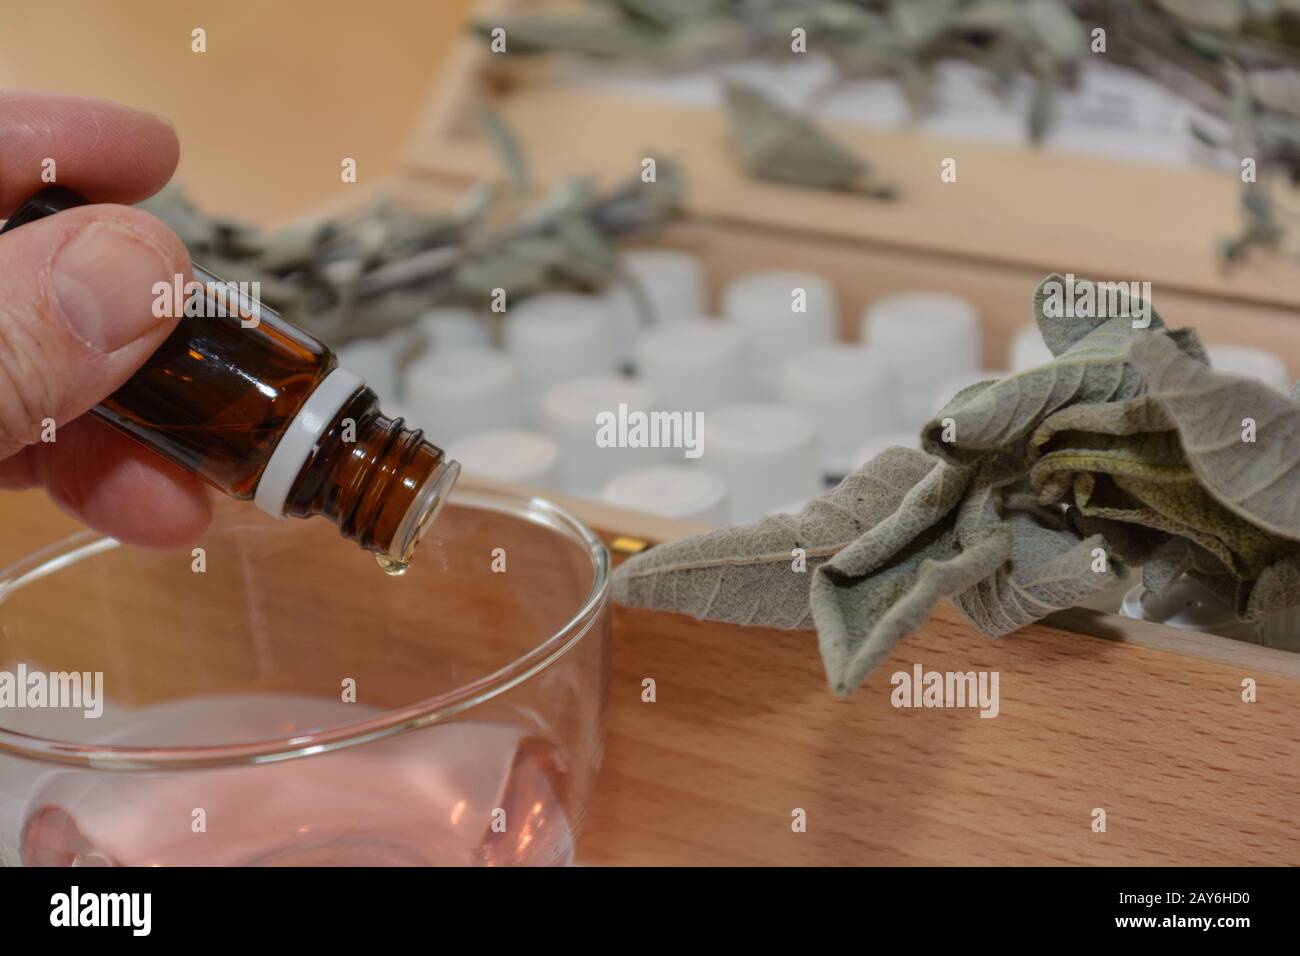 Algo gotea de una botella de vidrio marrón en otro líquido - primer plano Foto de stock